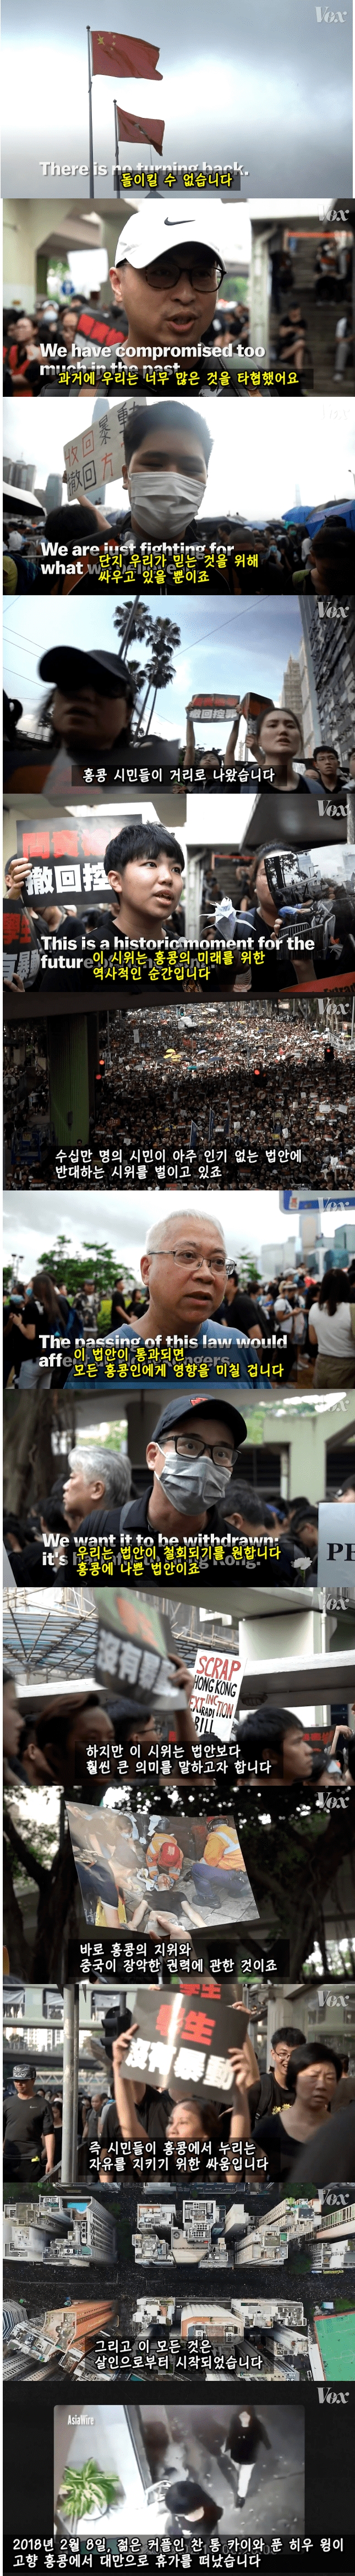 대규모 홍콩 시위의 근본적인 이유